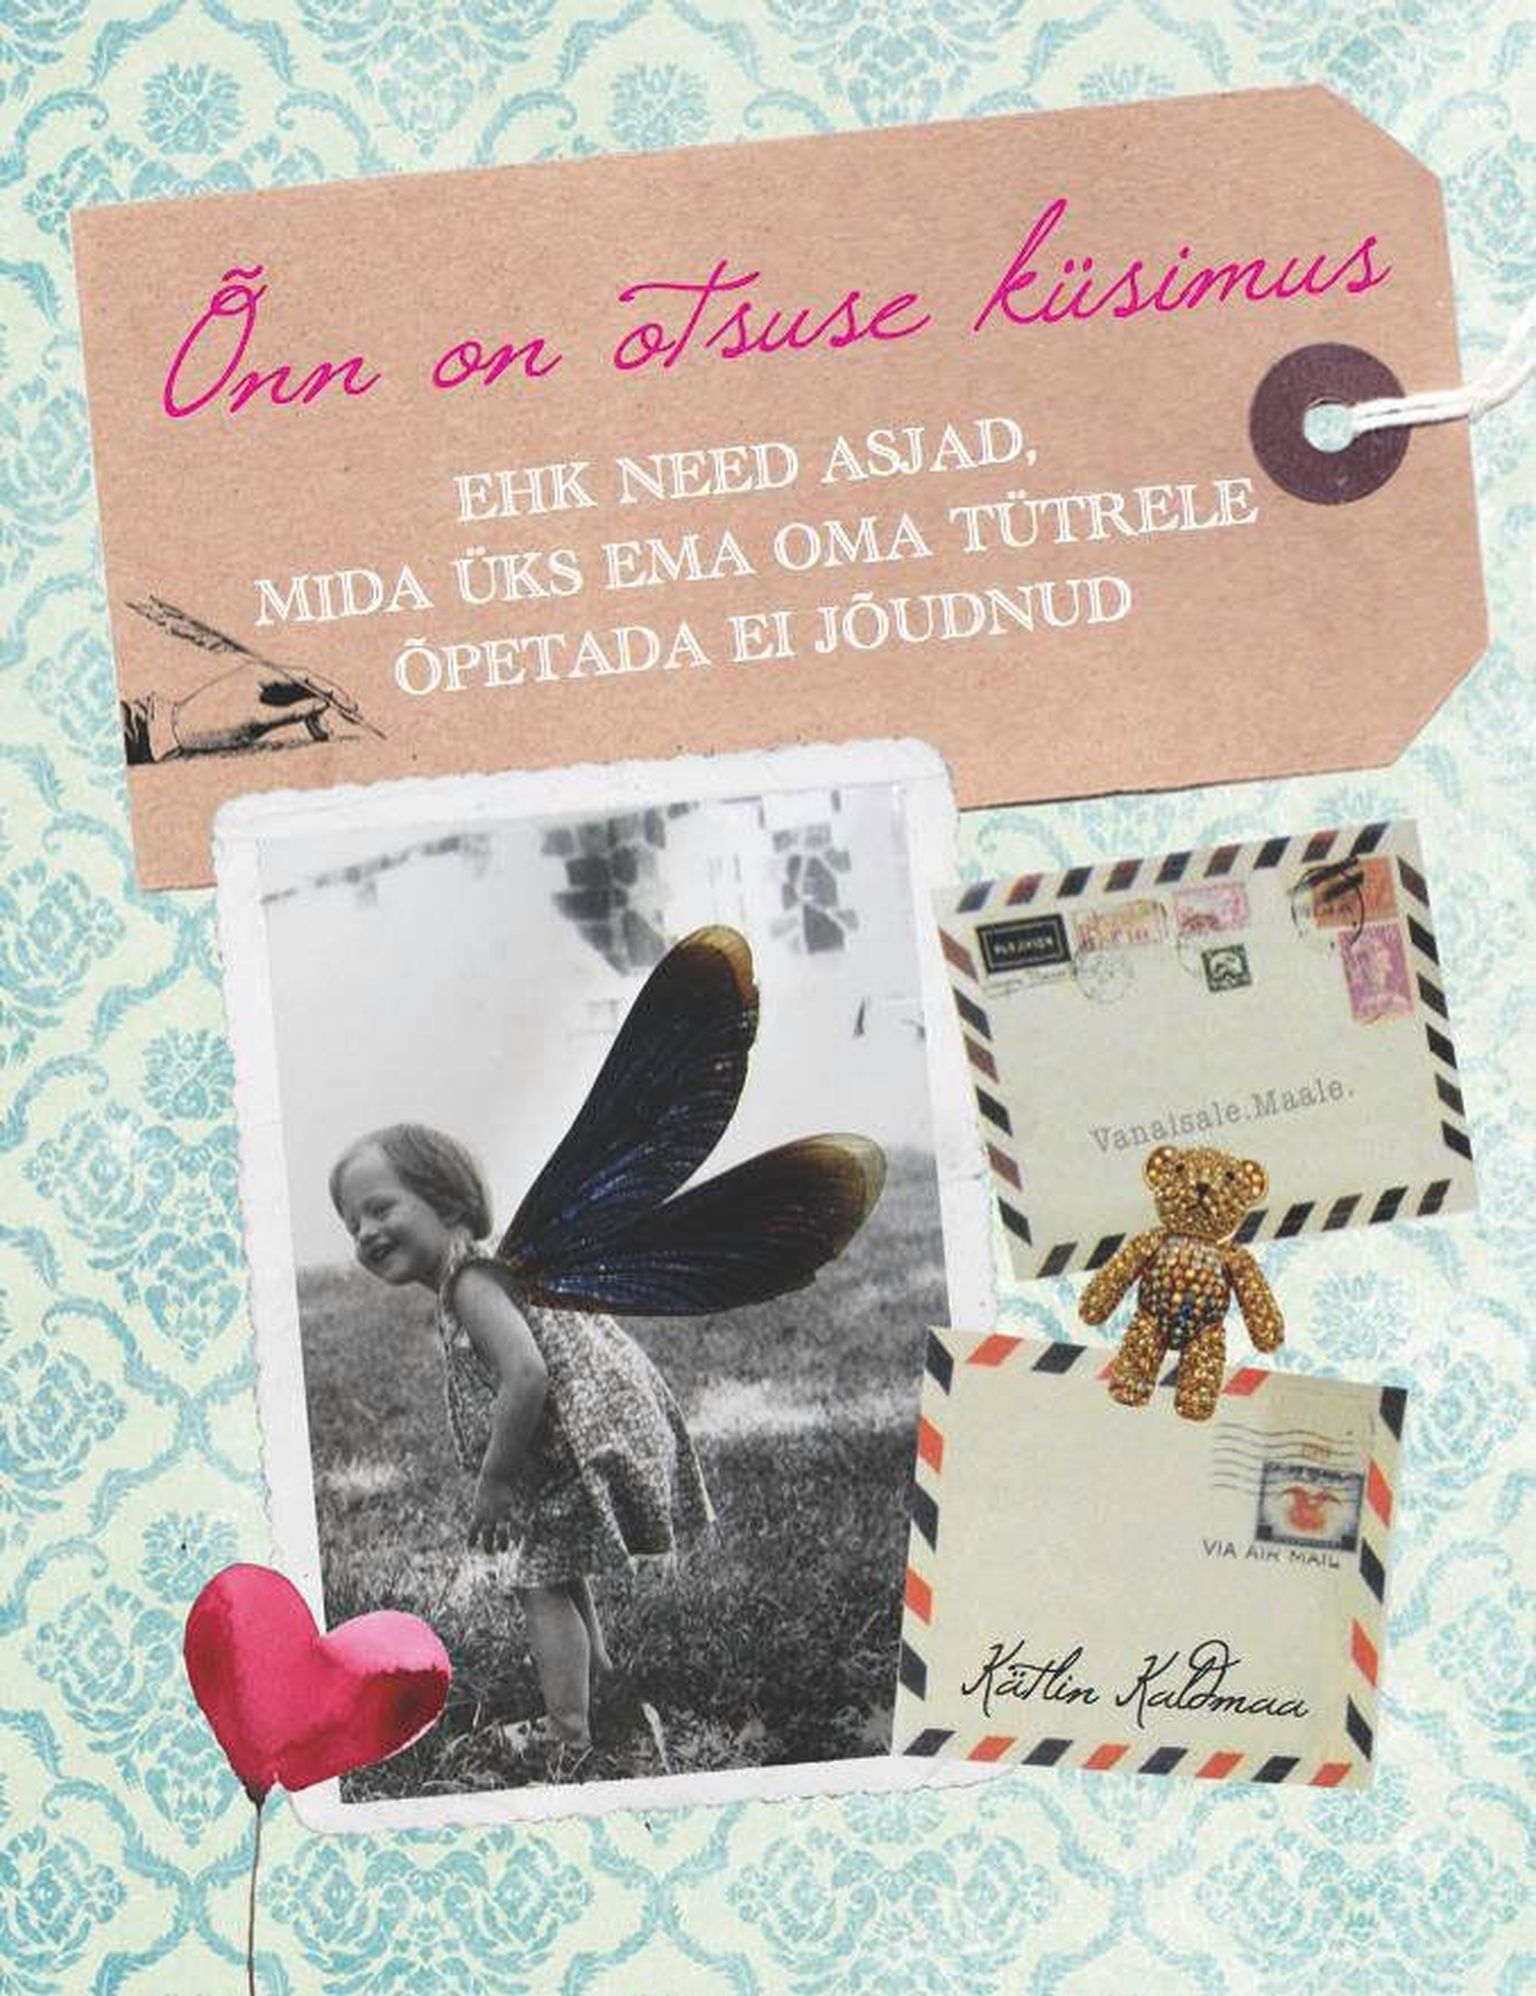 Raamat
Kätlin Kaldmaa 
«Õnn on otsuse küsimus»
Ajakirjade 
Kirjastus 2013
128 lk